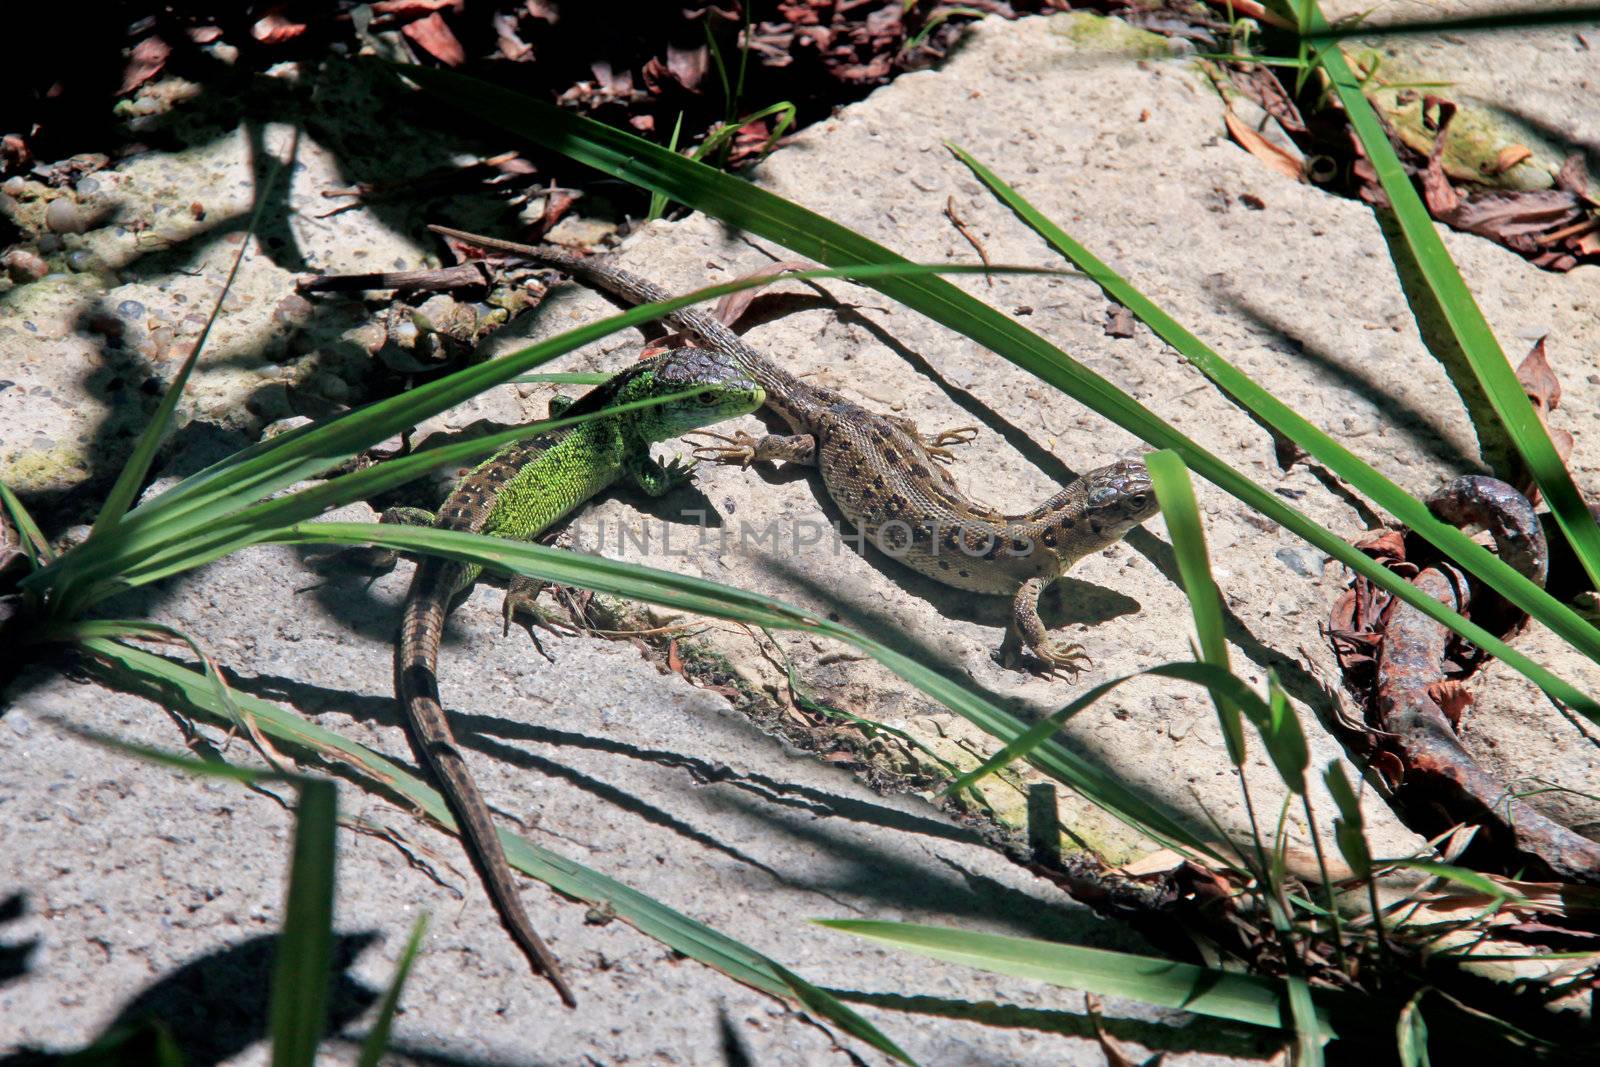 Two lizards sunbathing on a stone